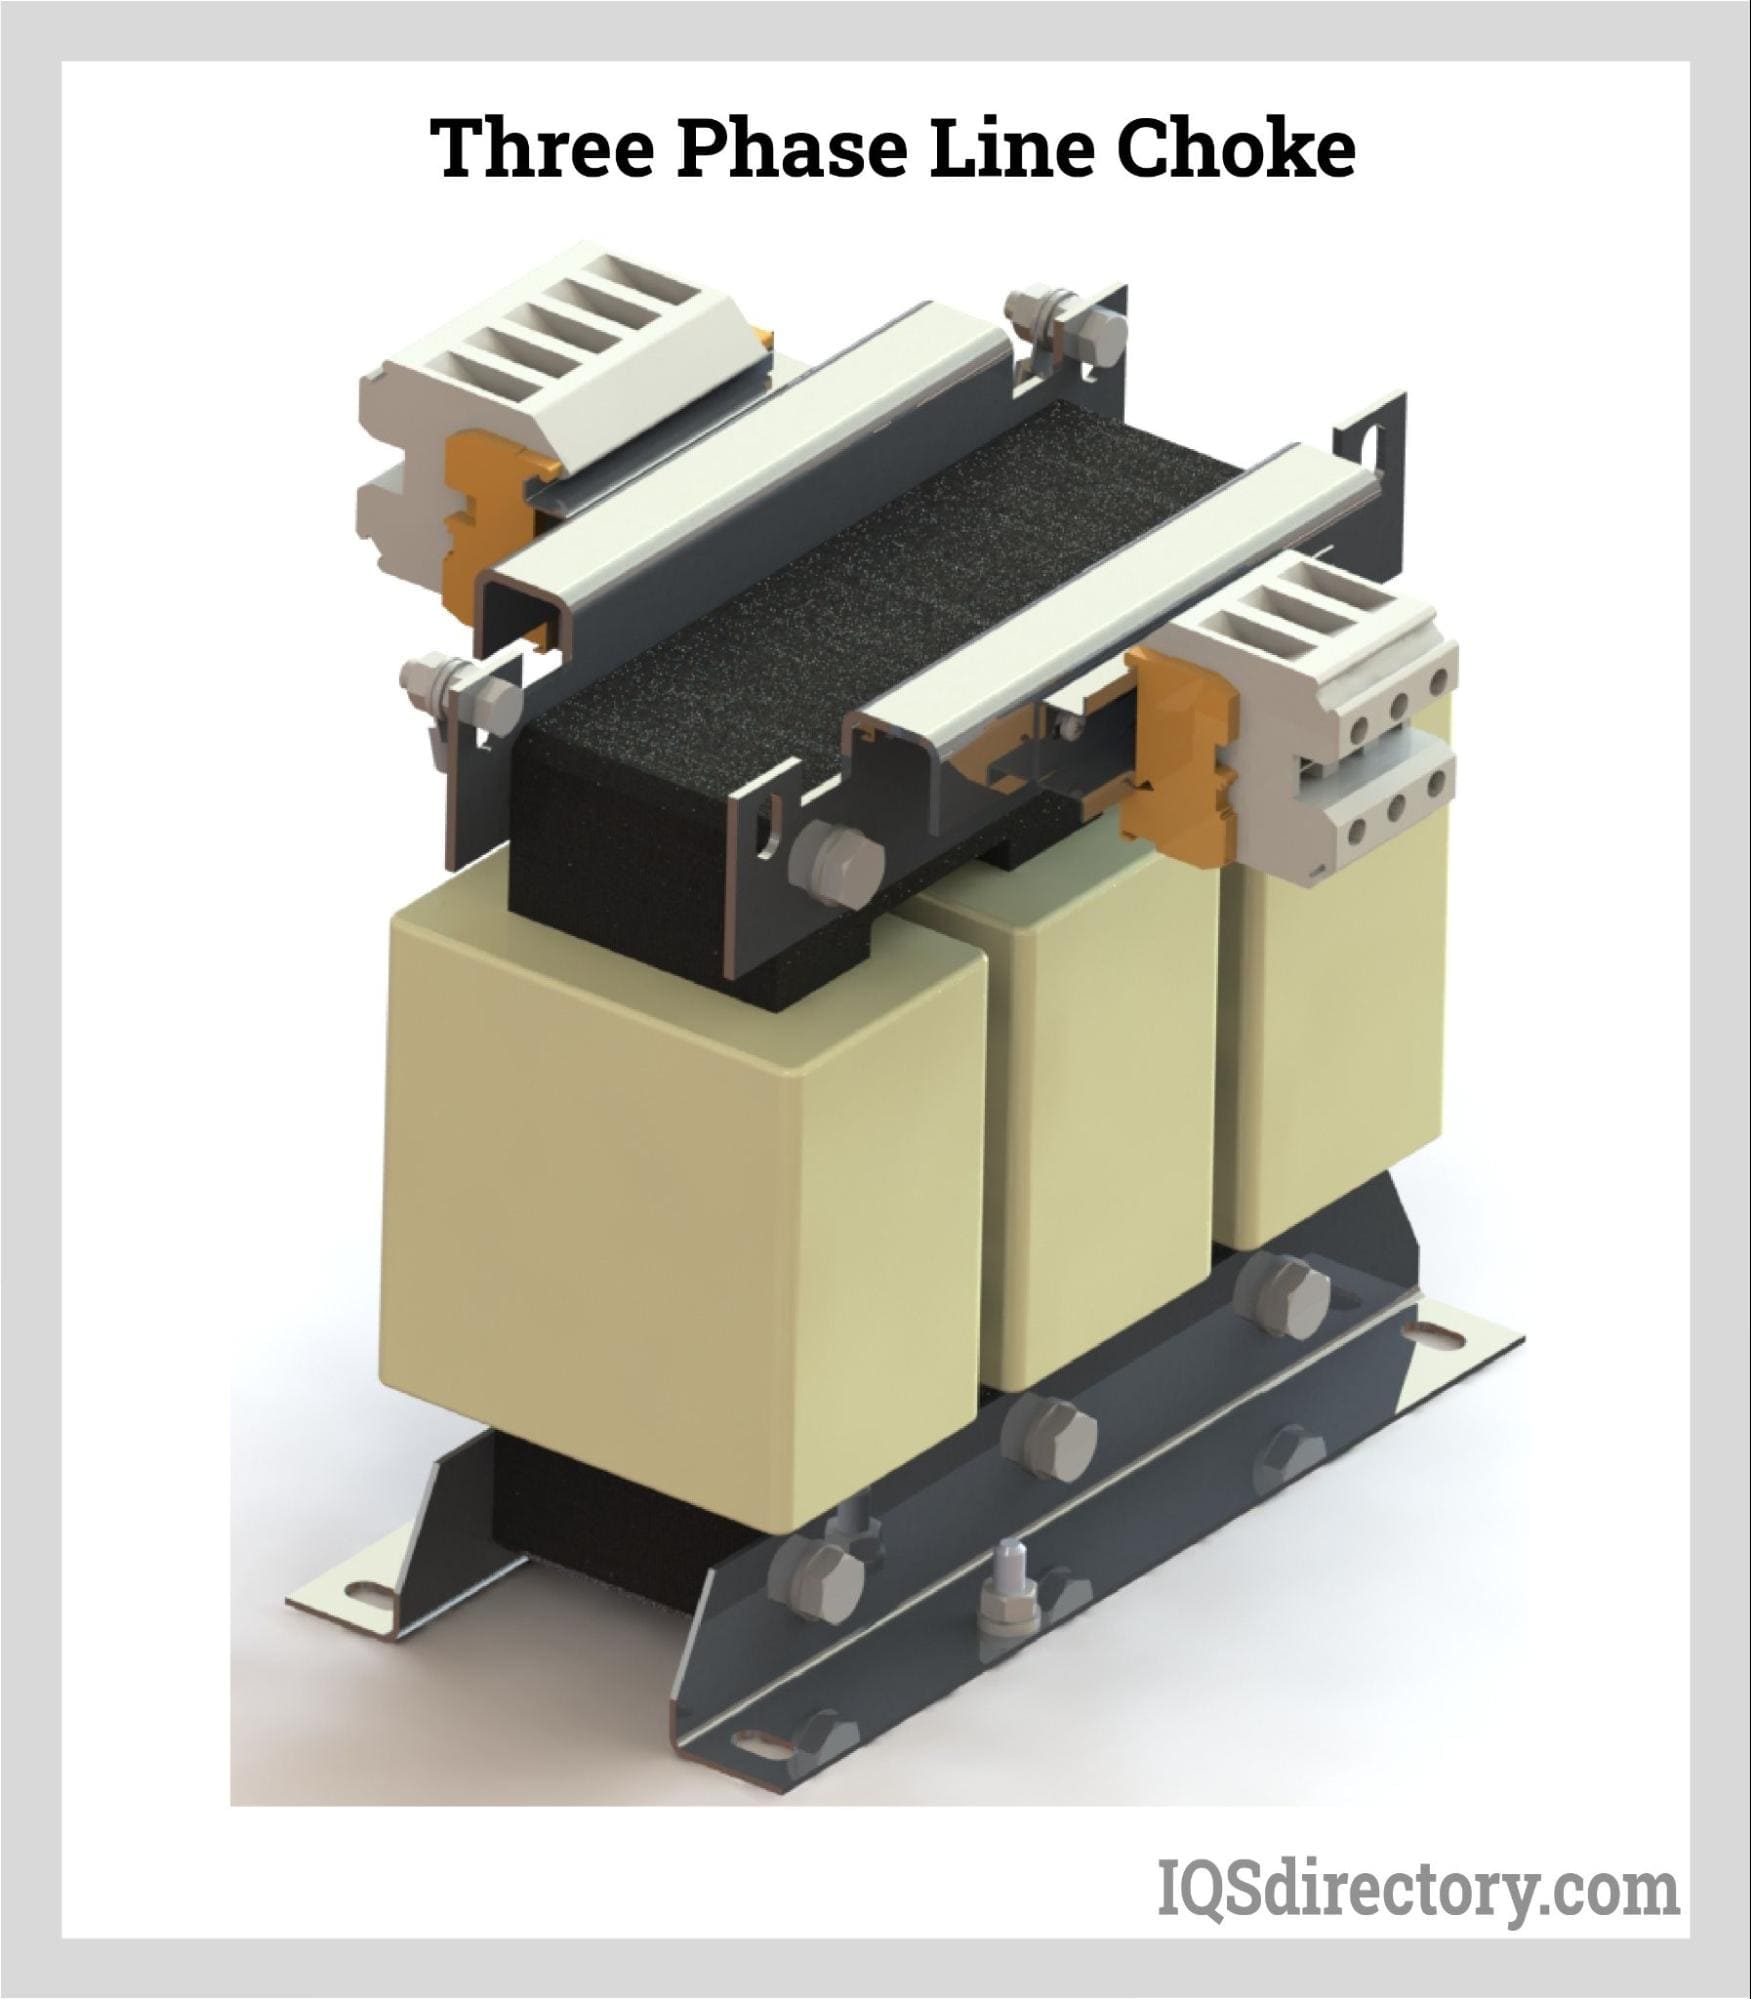 Three Phase Line Choke